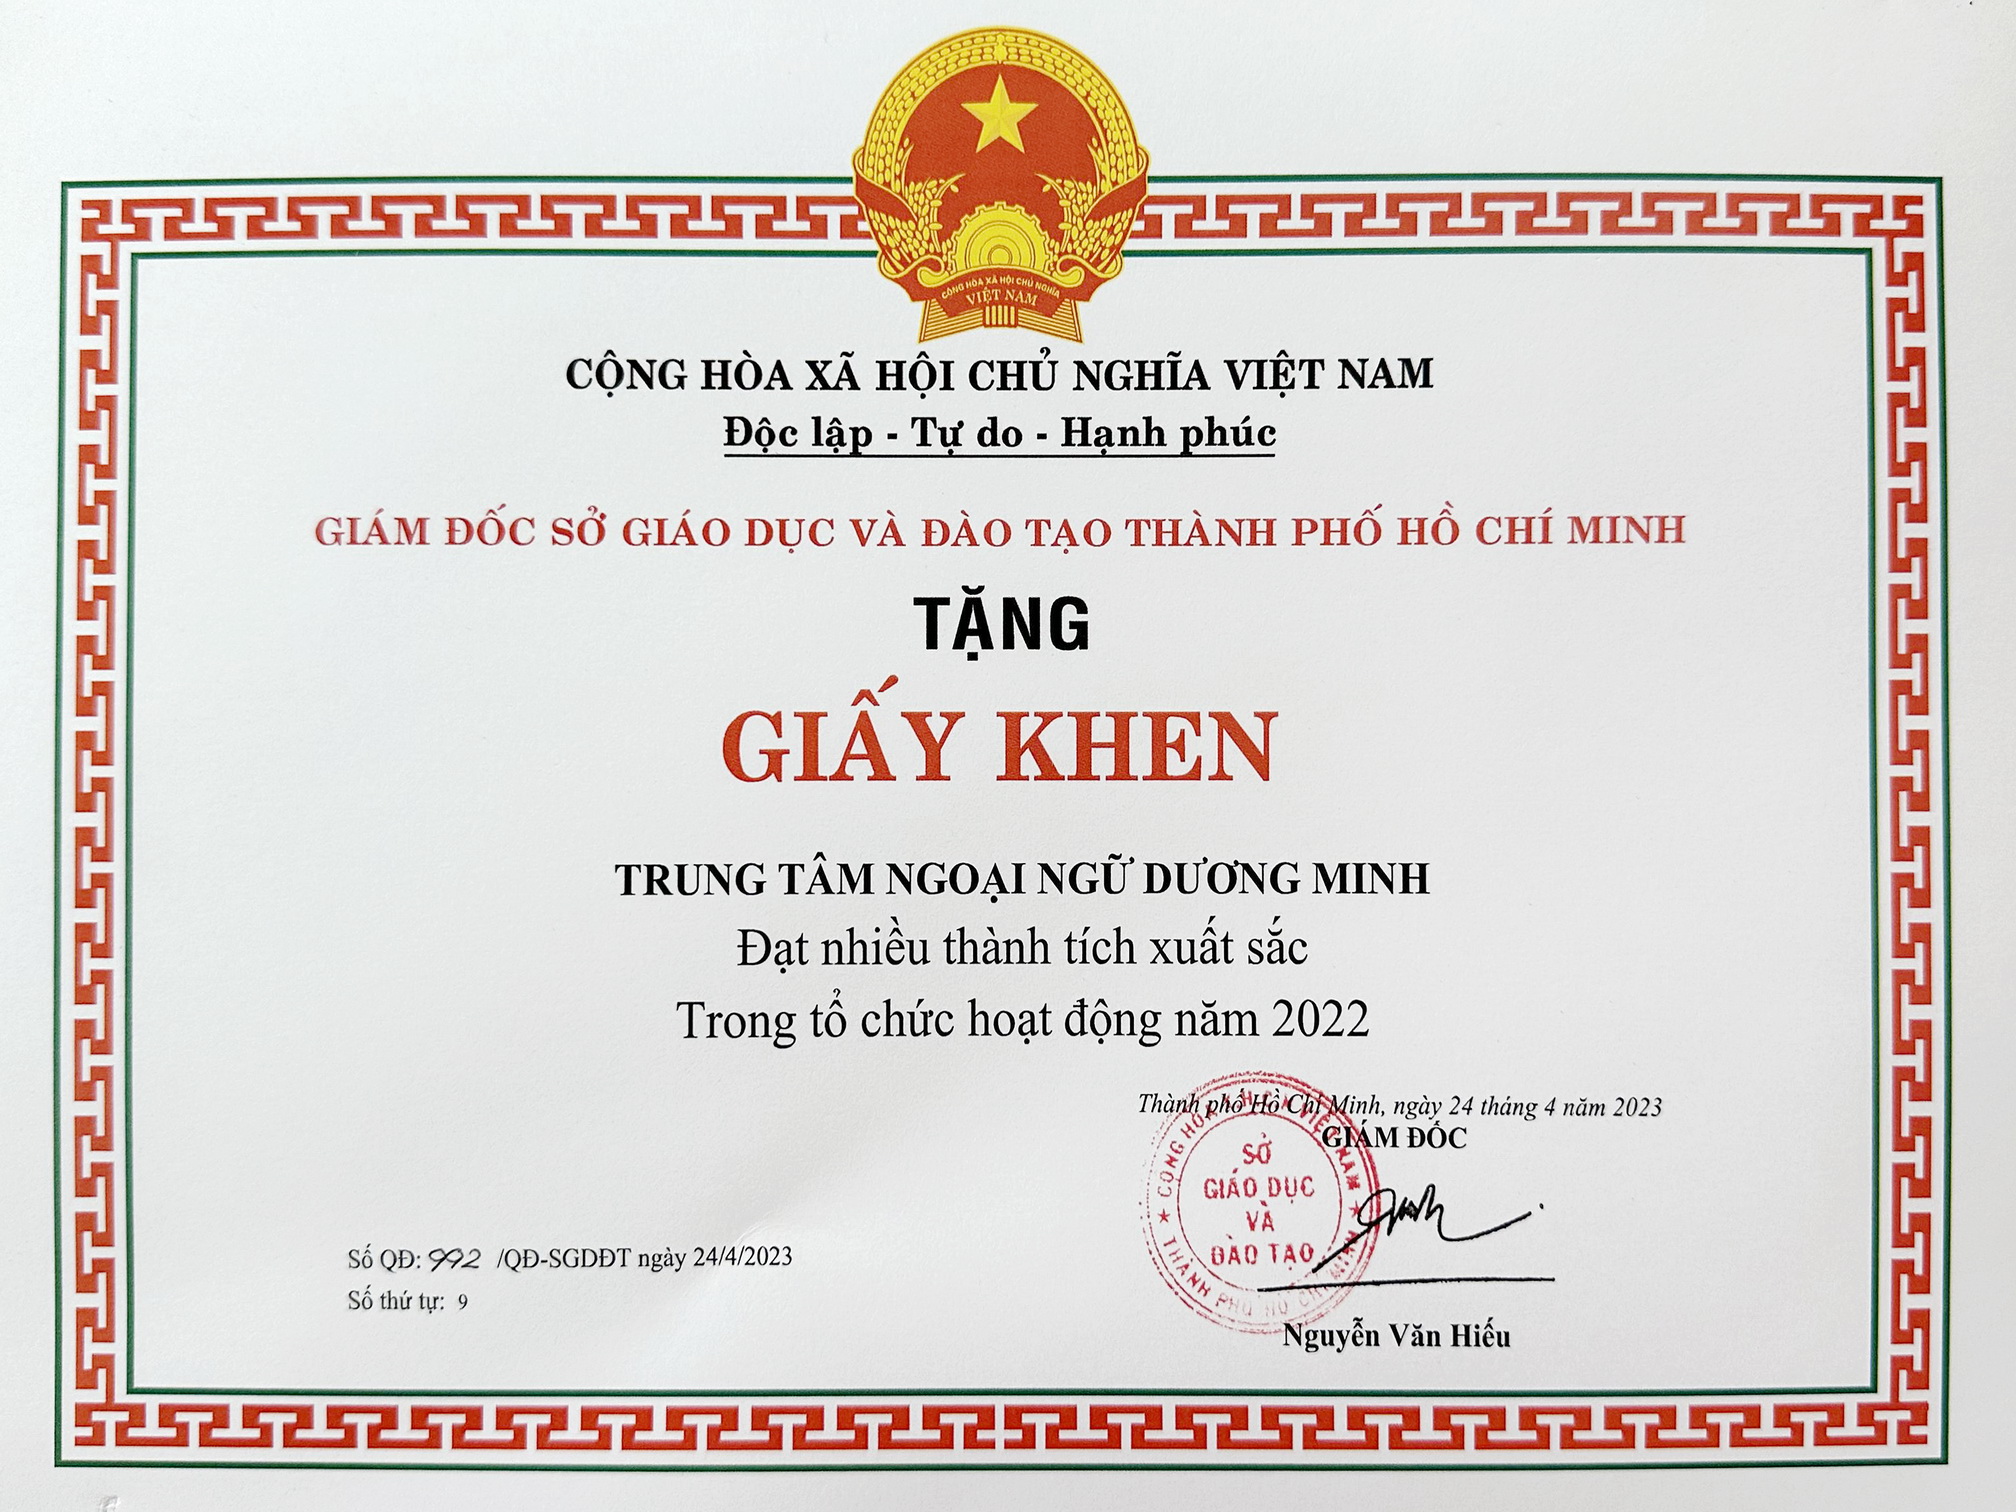 Ngoại Ngữ Dương Minh Đón Nhận Bằng Khen Từ Sở GD&ĐT TP.HCM